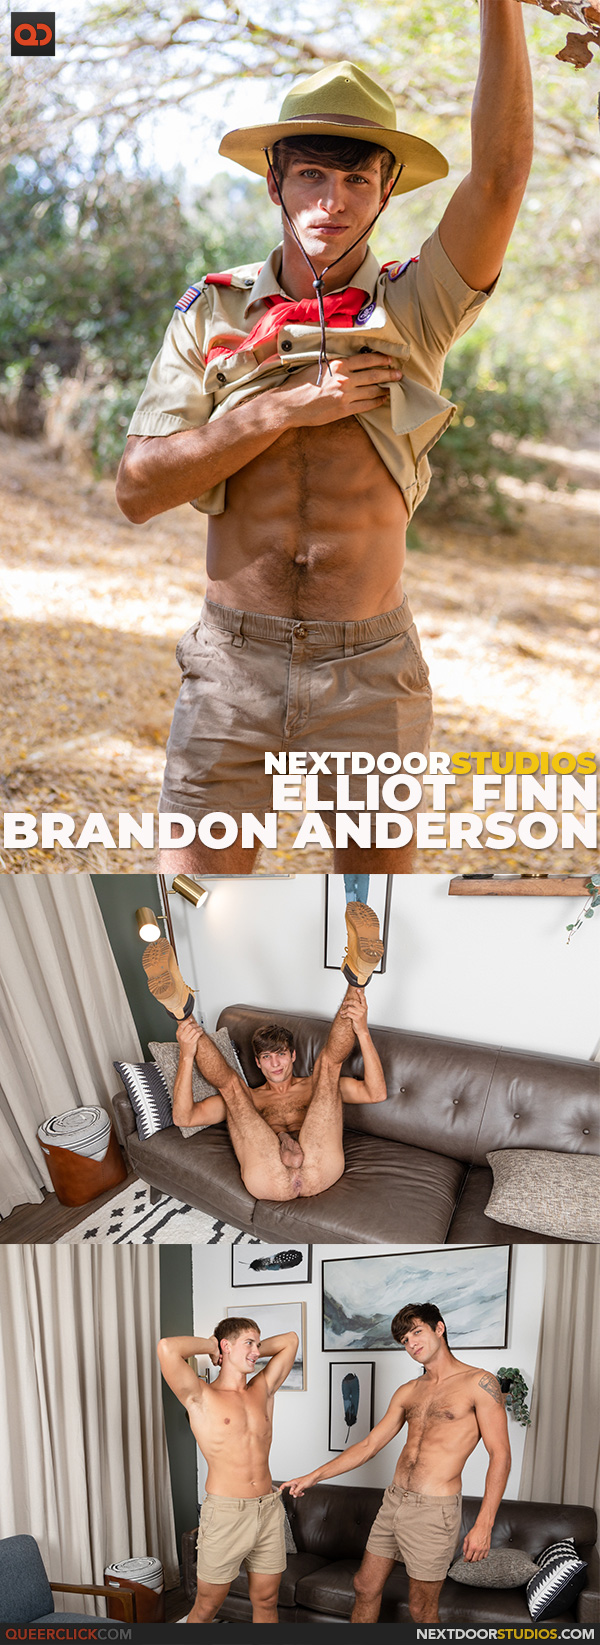 NextDoorStudios: Elliot Finn and Brandon Anderson